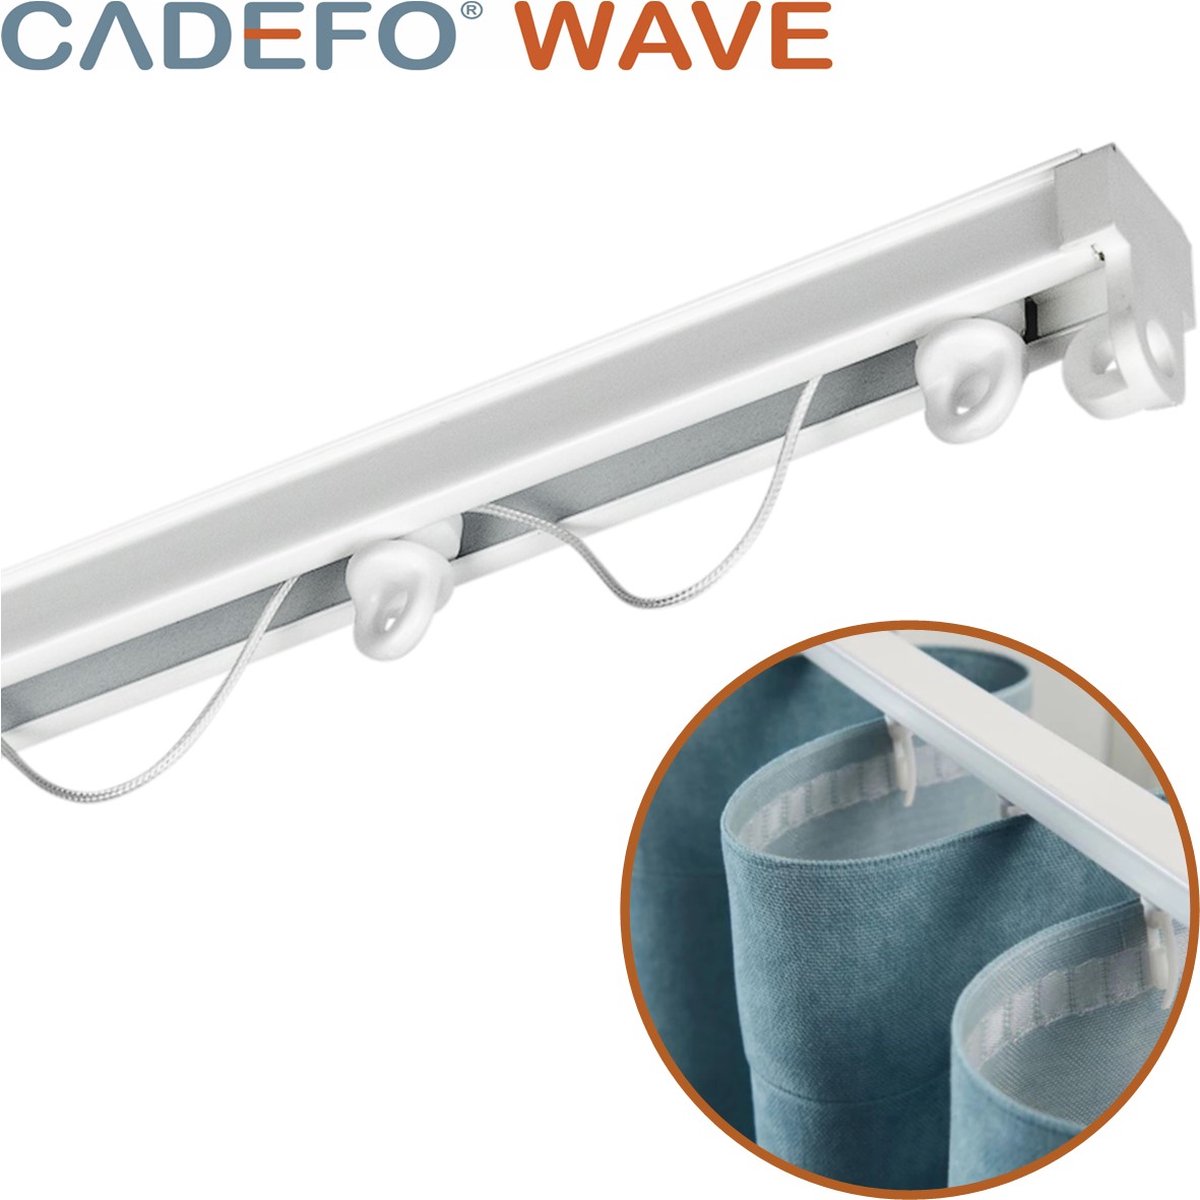 CADEFO WAVE (251 - 300 cm) Gordijnrails - Compleet op maat! - UIT 1 STUK - Leverbaar tot 6 meter - Plafondbevestiging - Lengte 252 cm